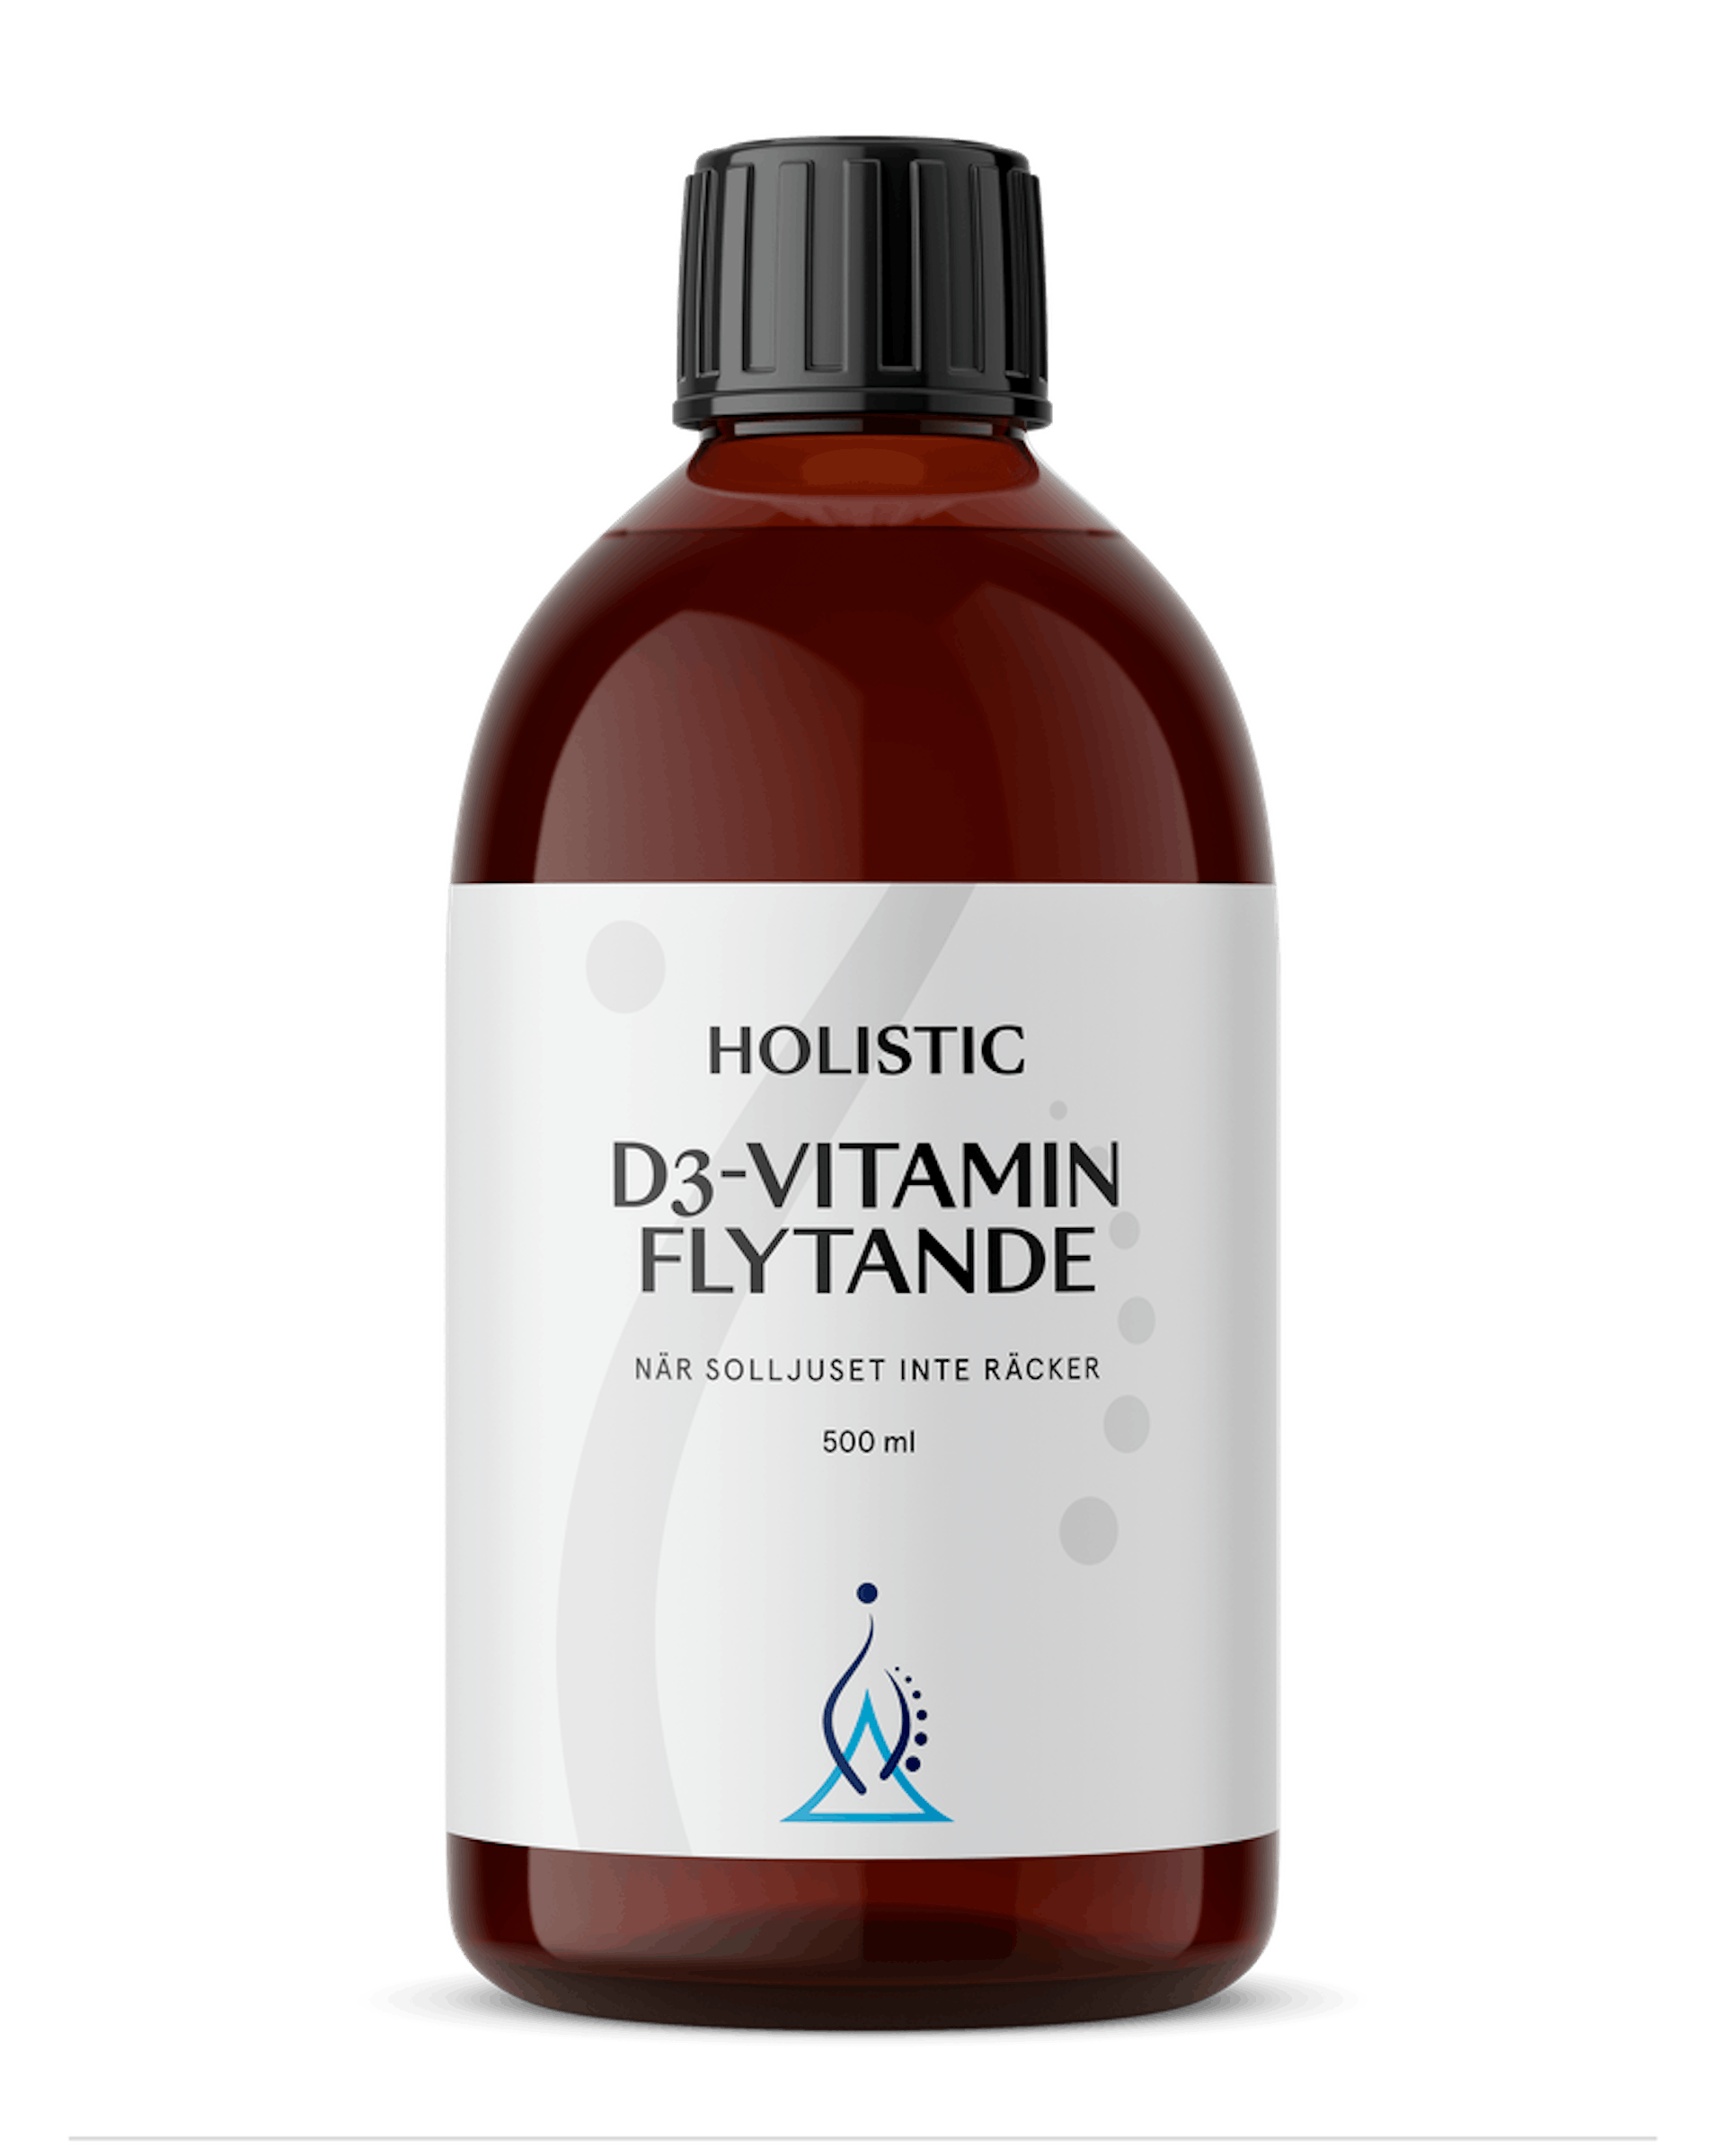 D3-vitamin flytande, 500 ml